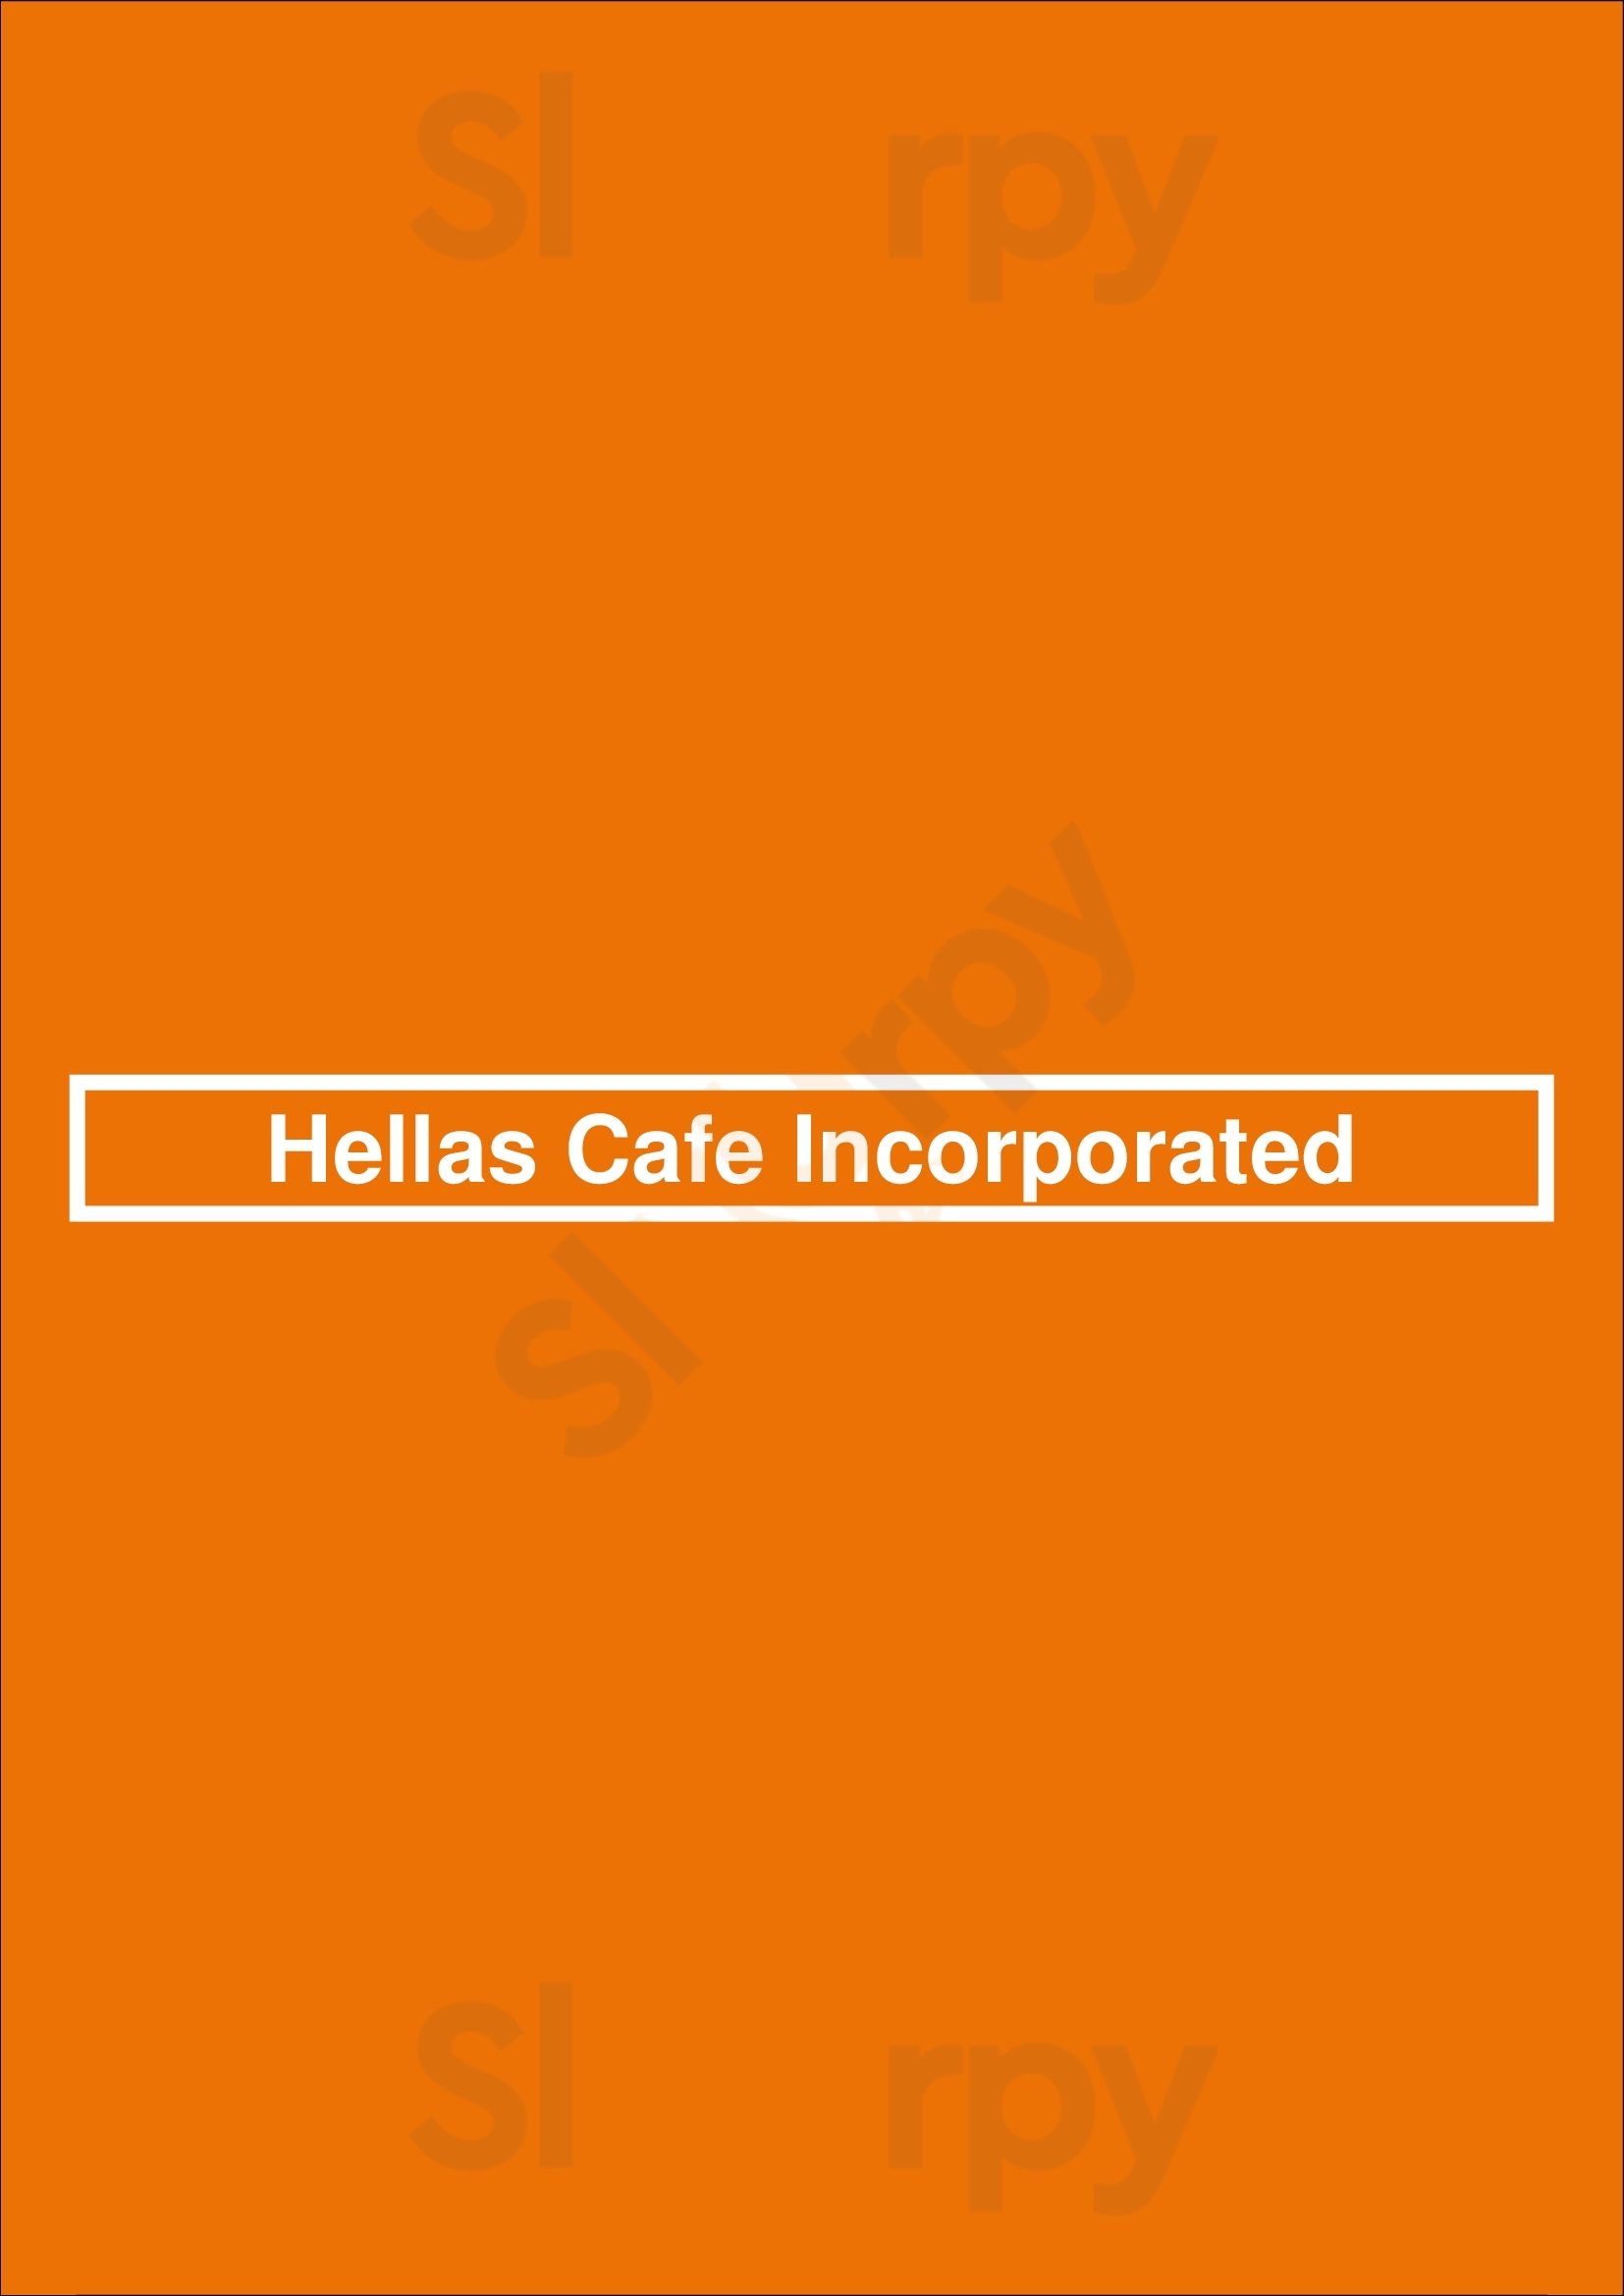 Hellas Cafe Incorporated Indianapolis Menu - 1